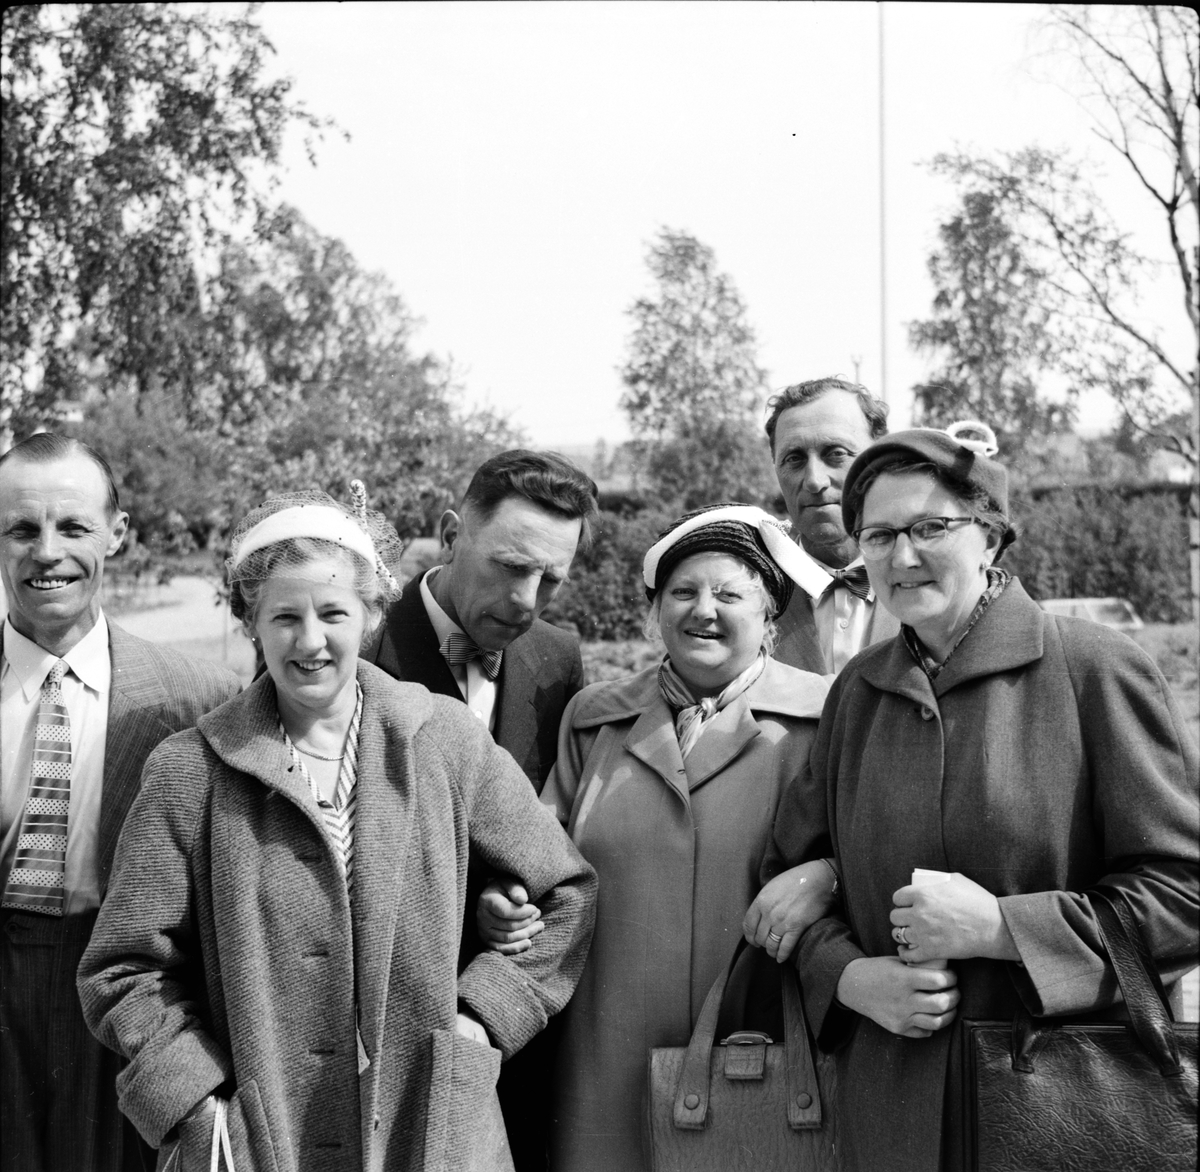 Mejeriföreningen,
P. Perzon, Sv. Häger, m.fl.
Besök på mejeriet,
1953